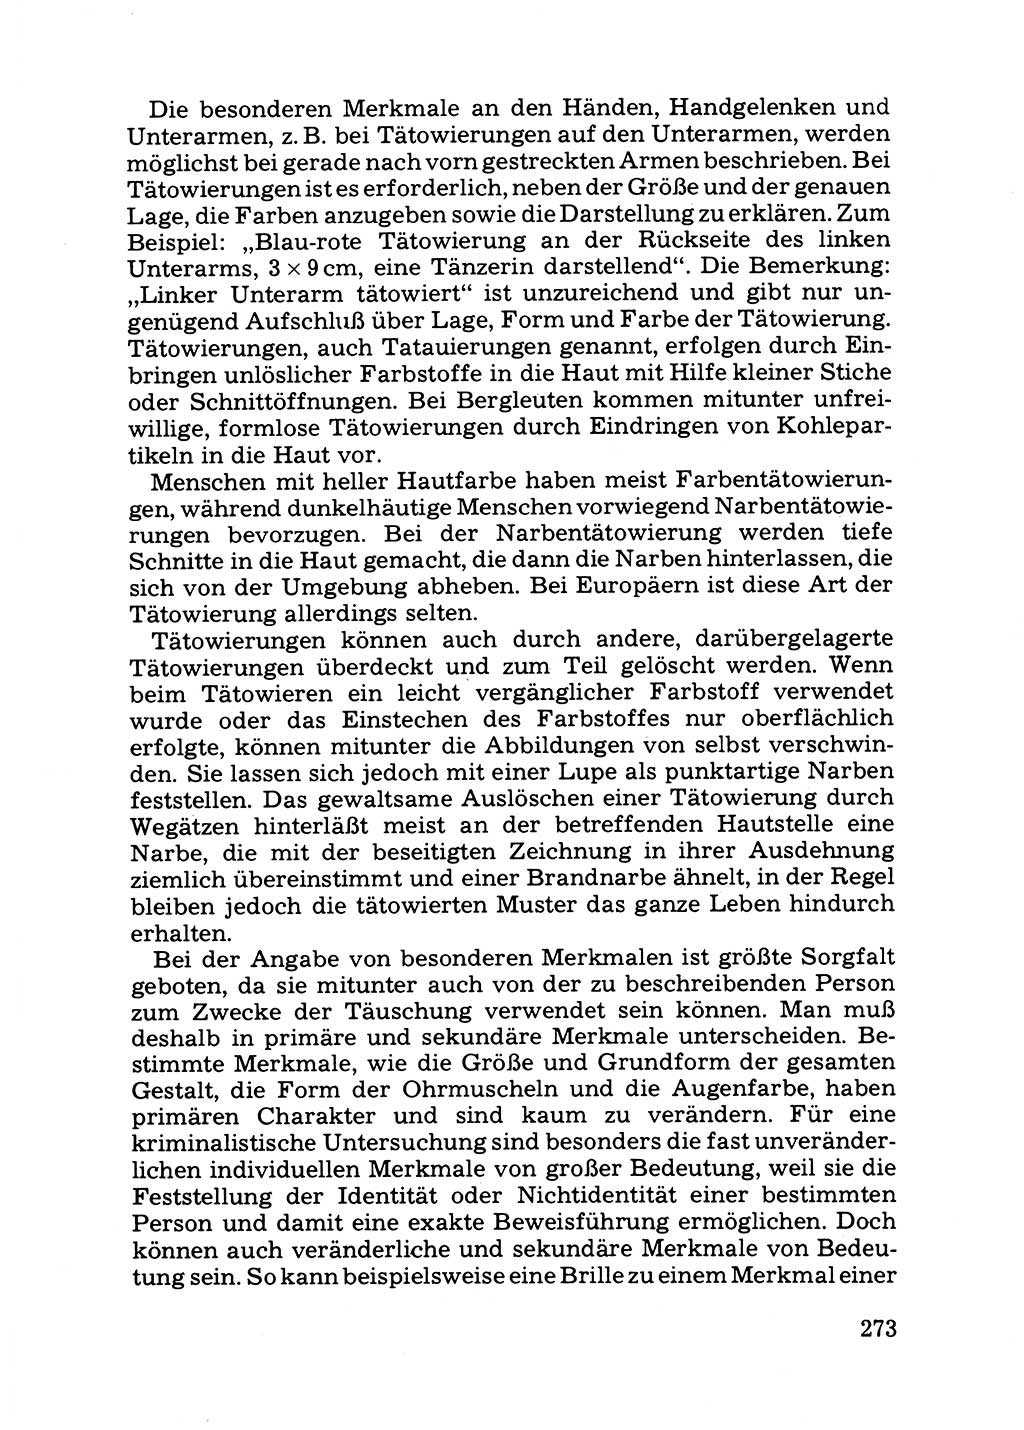 Das subjektive Porträt [Deutsche Demokratische Republik (DDR)] 1981, Seite 273 (Subj. Port. DDR 1981, S. 273)